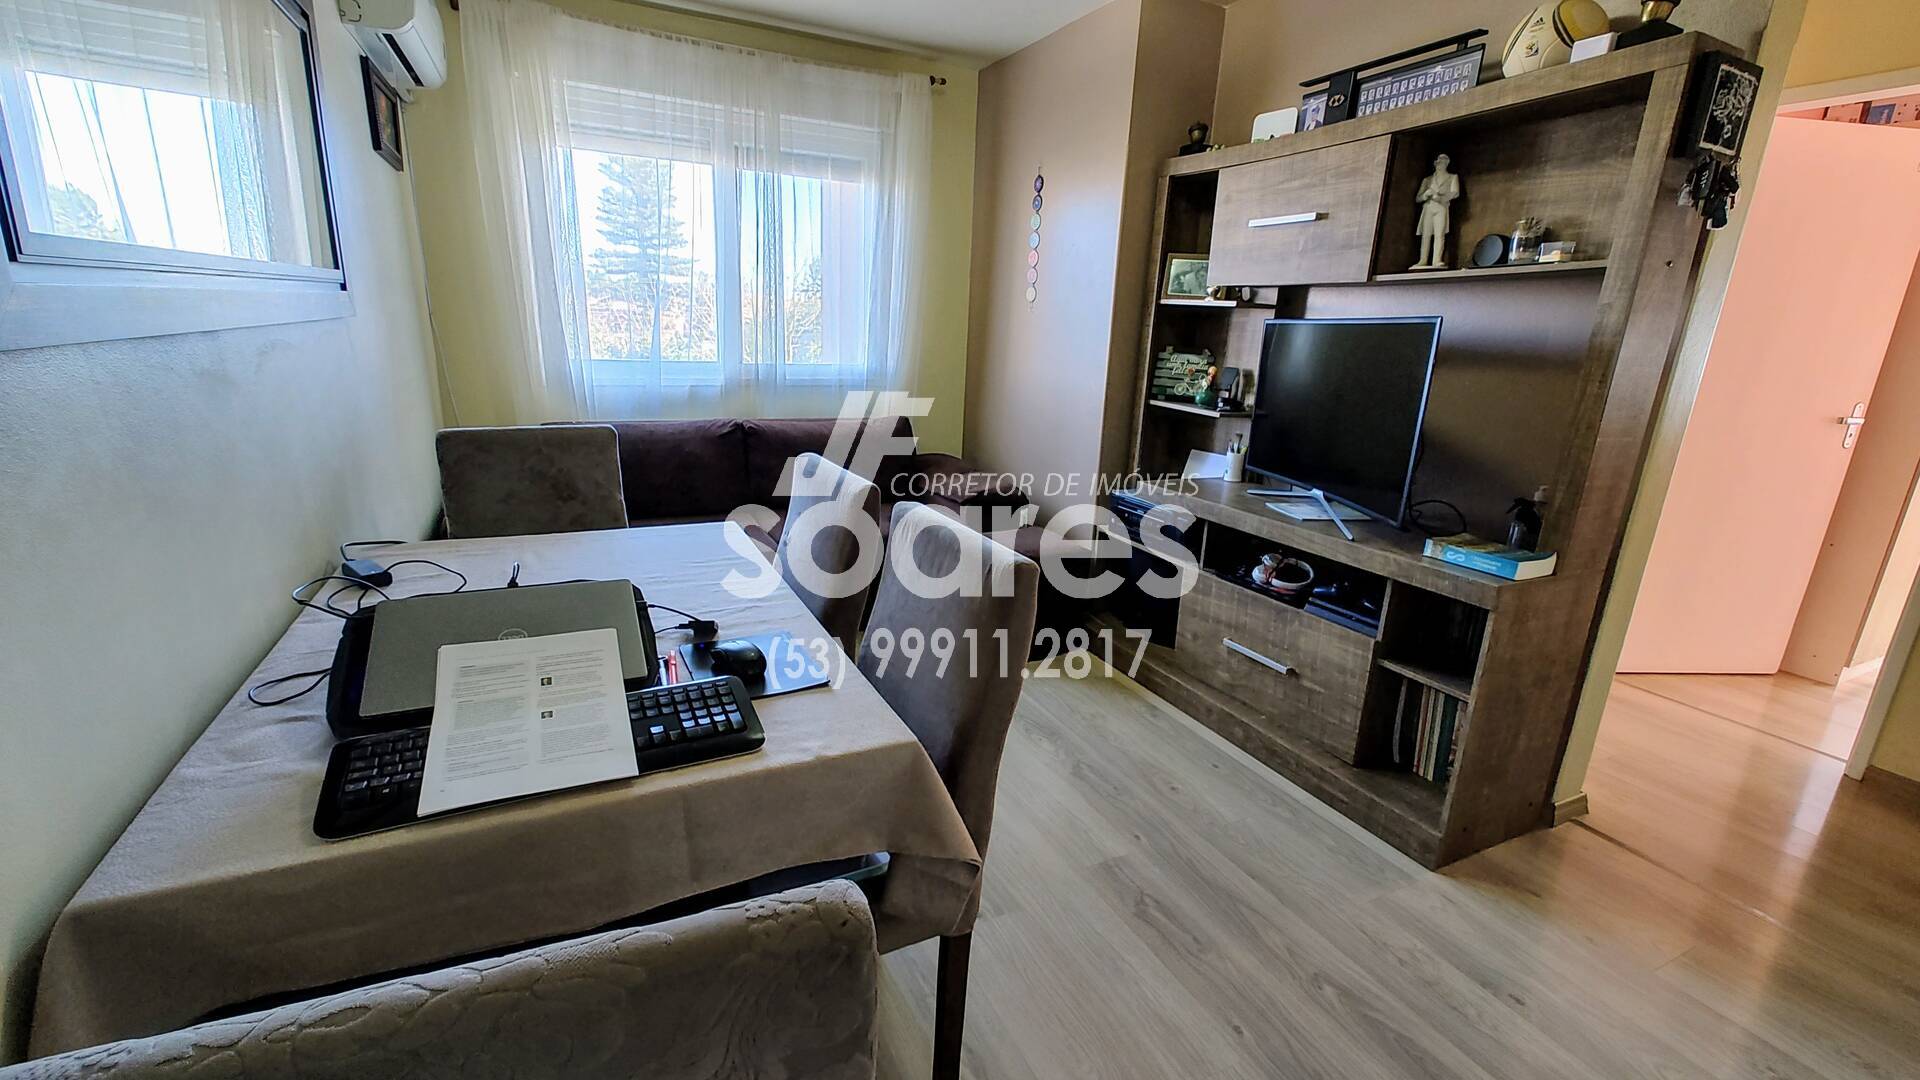 Apartamento, 3 quartos, 67 m² - Foto 3